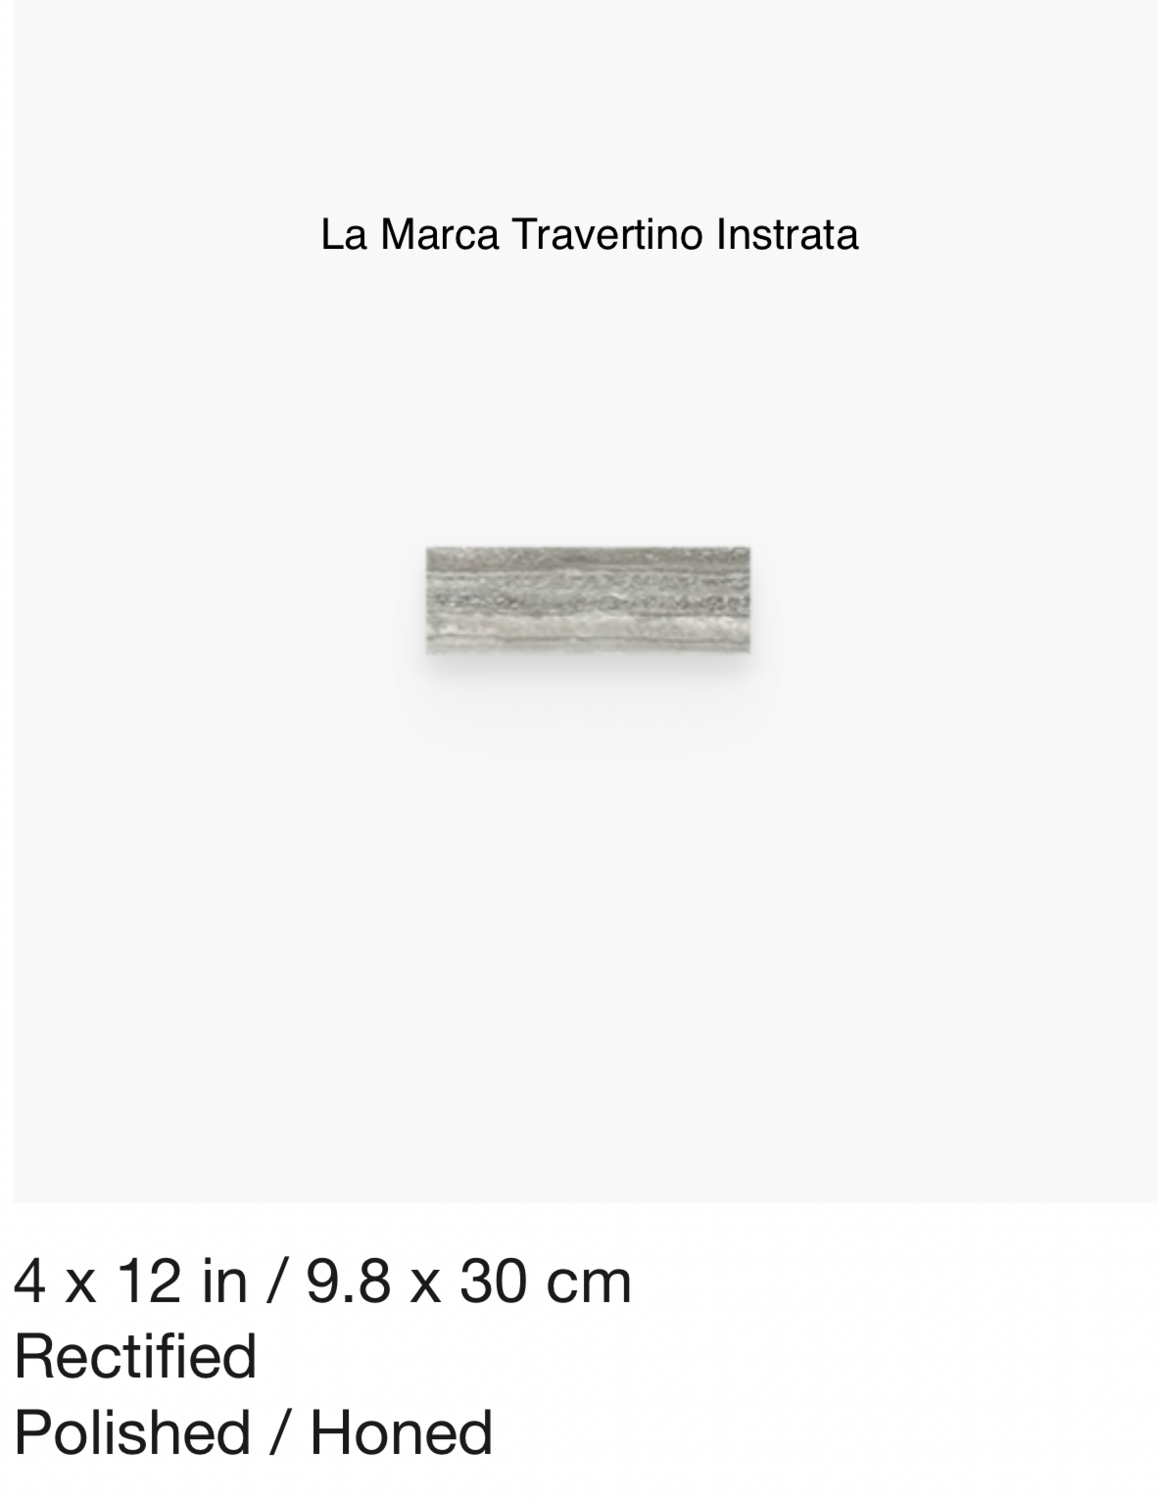 La Marca Series "Travertino Instrata" 4x12 (Anatolia) $11.64 SQFT